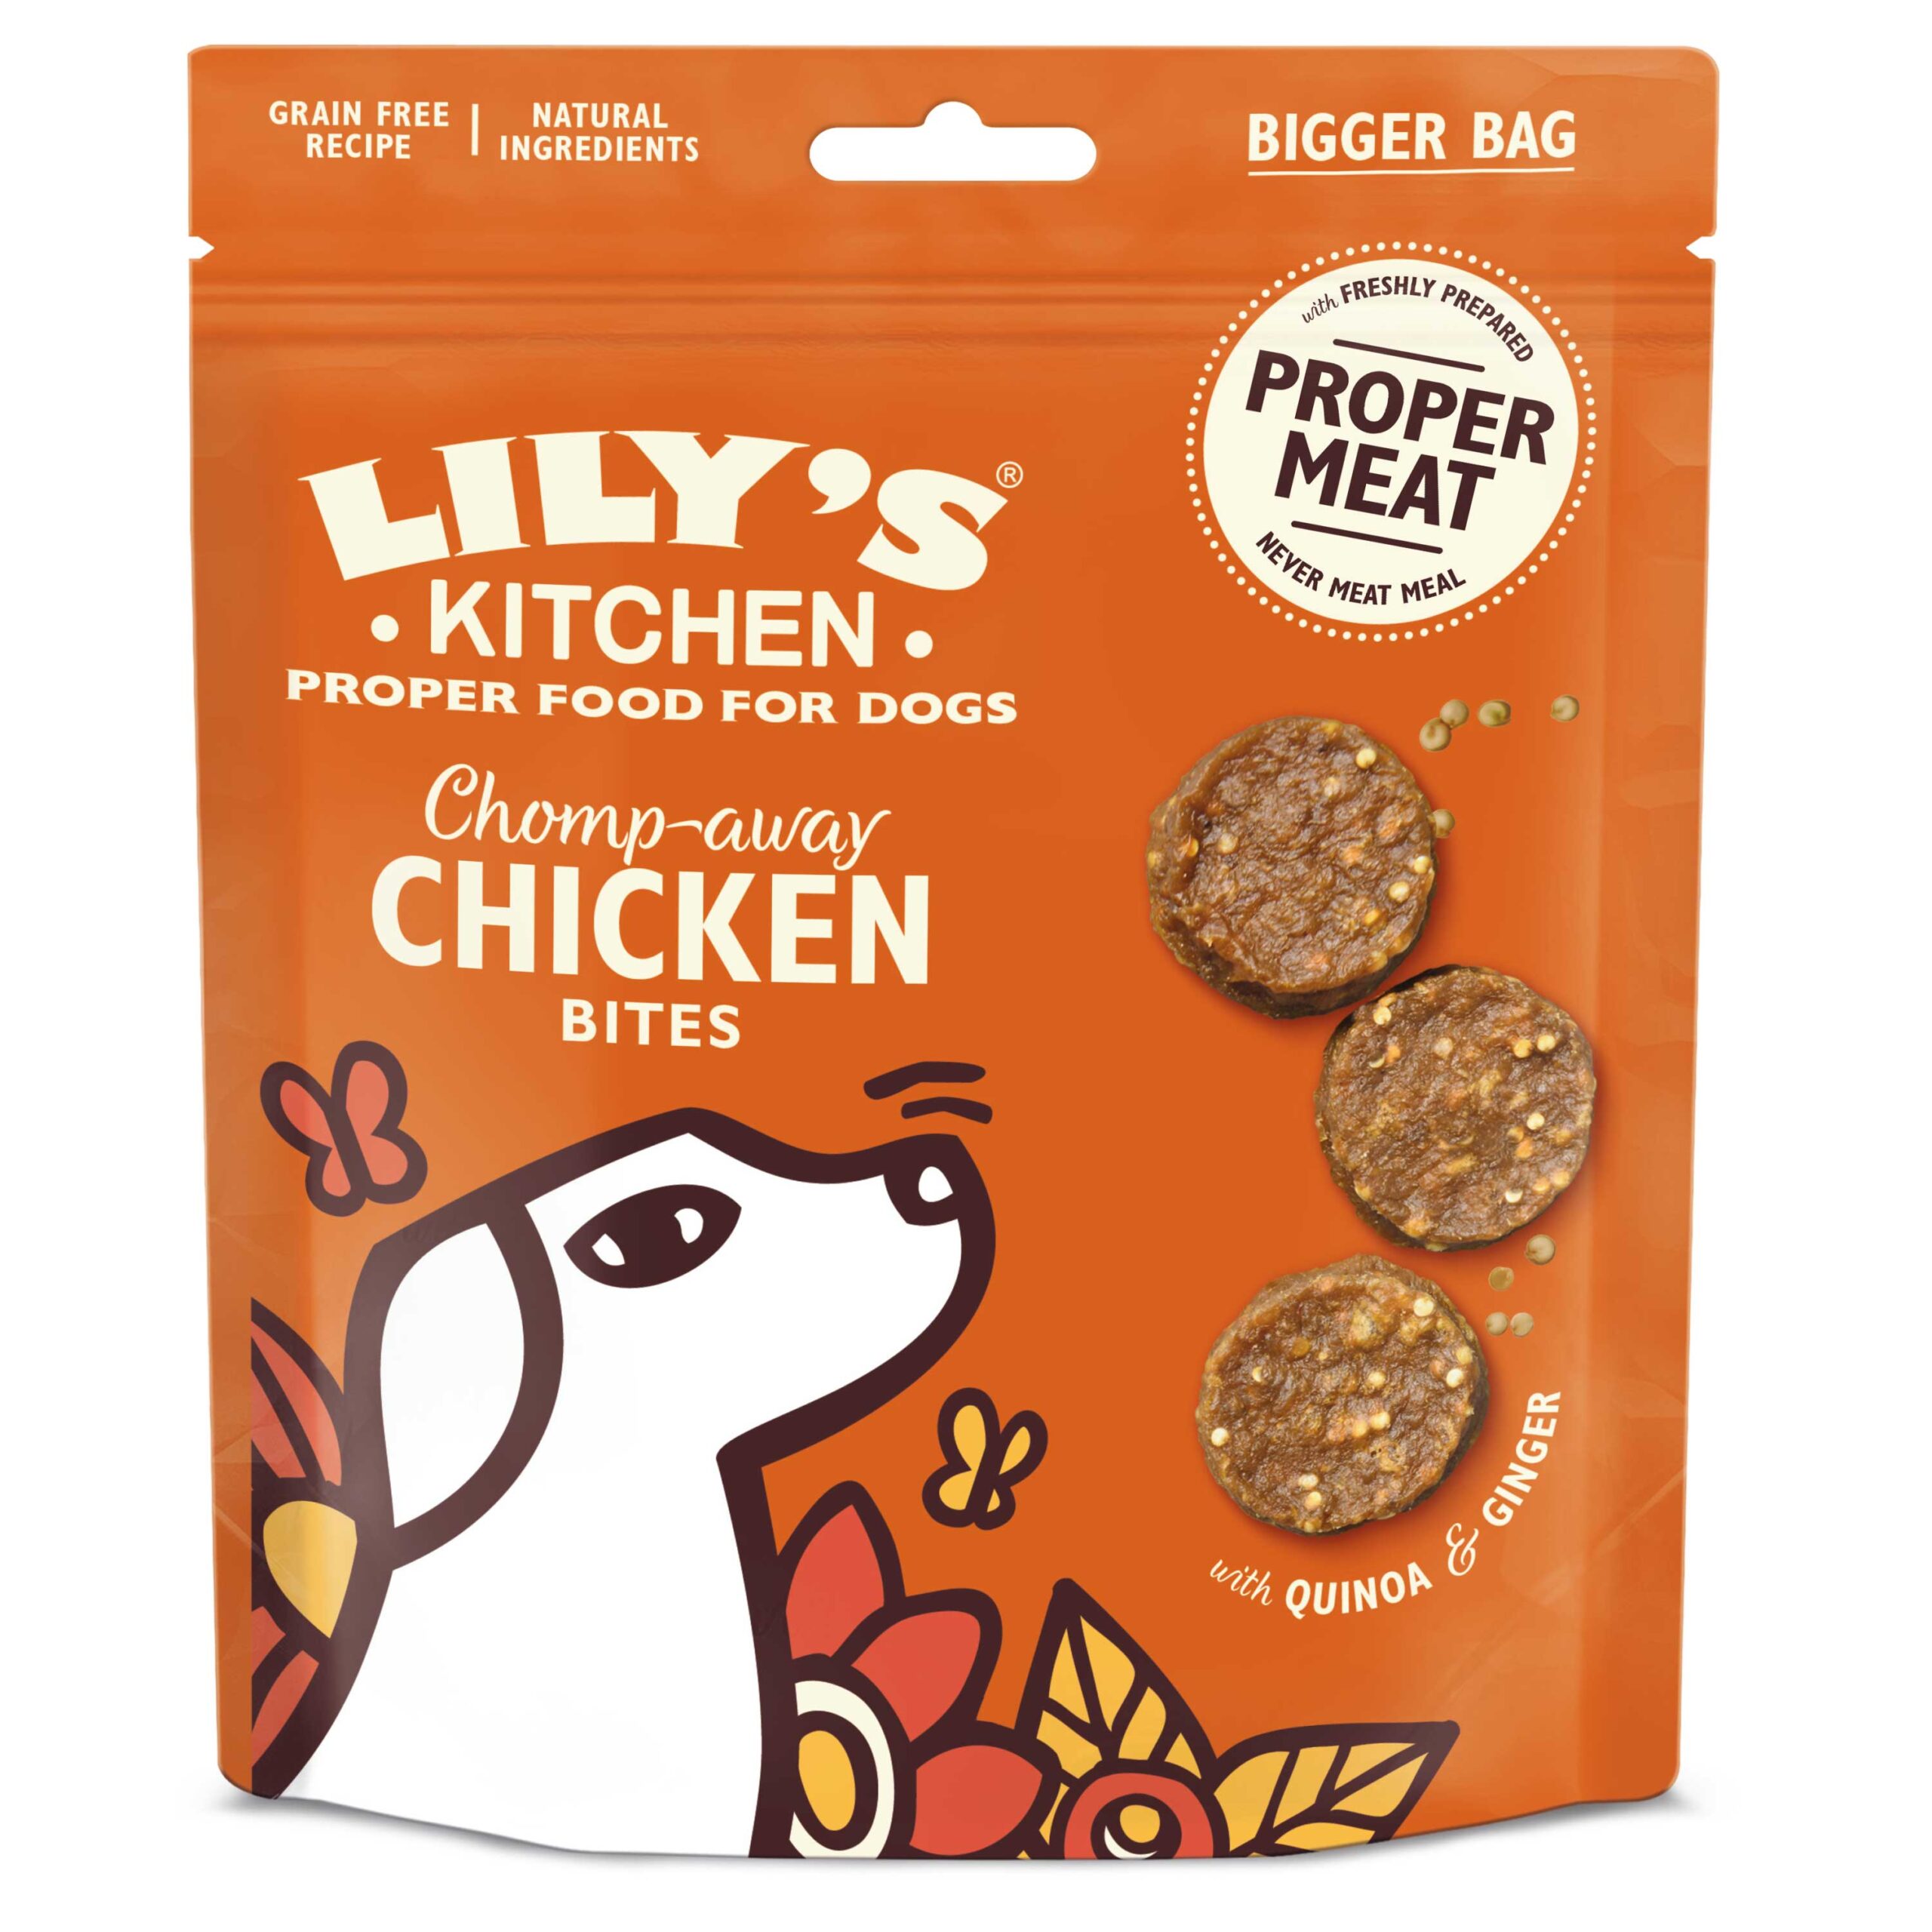 Lily’s Kitchen Dog Chicken Bites